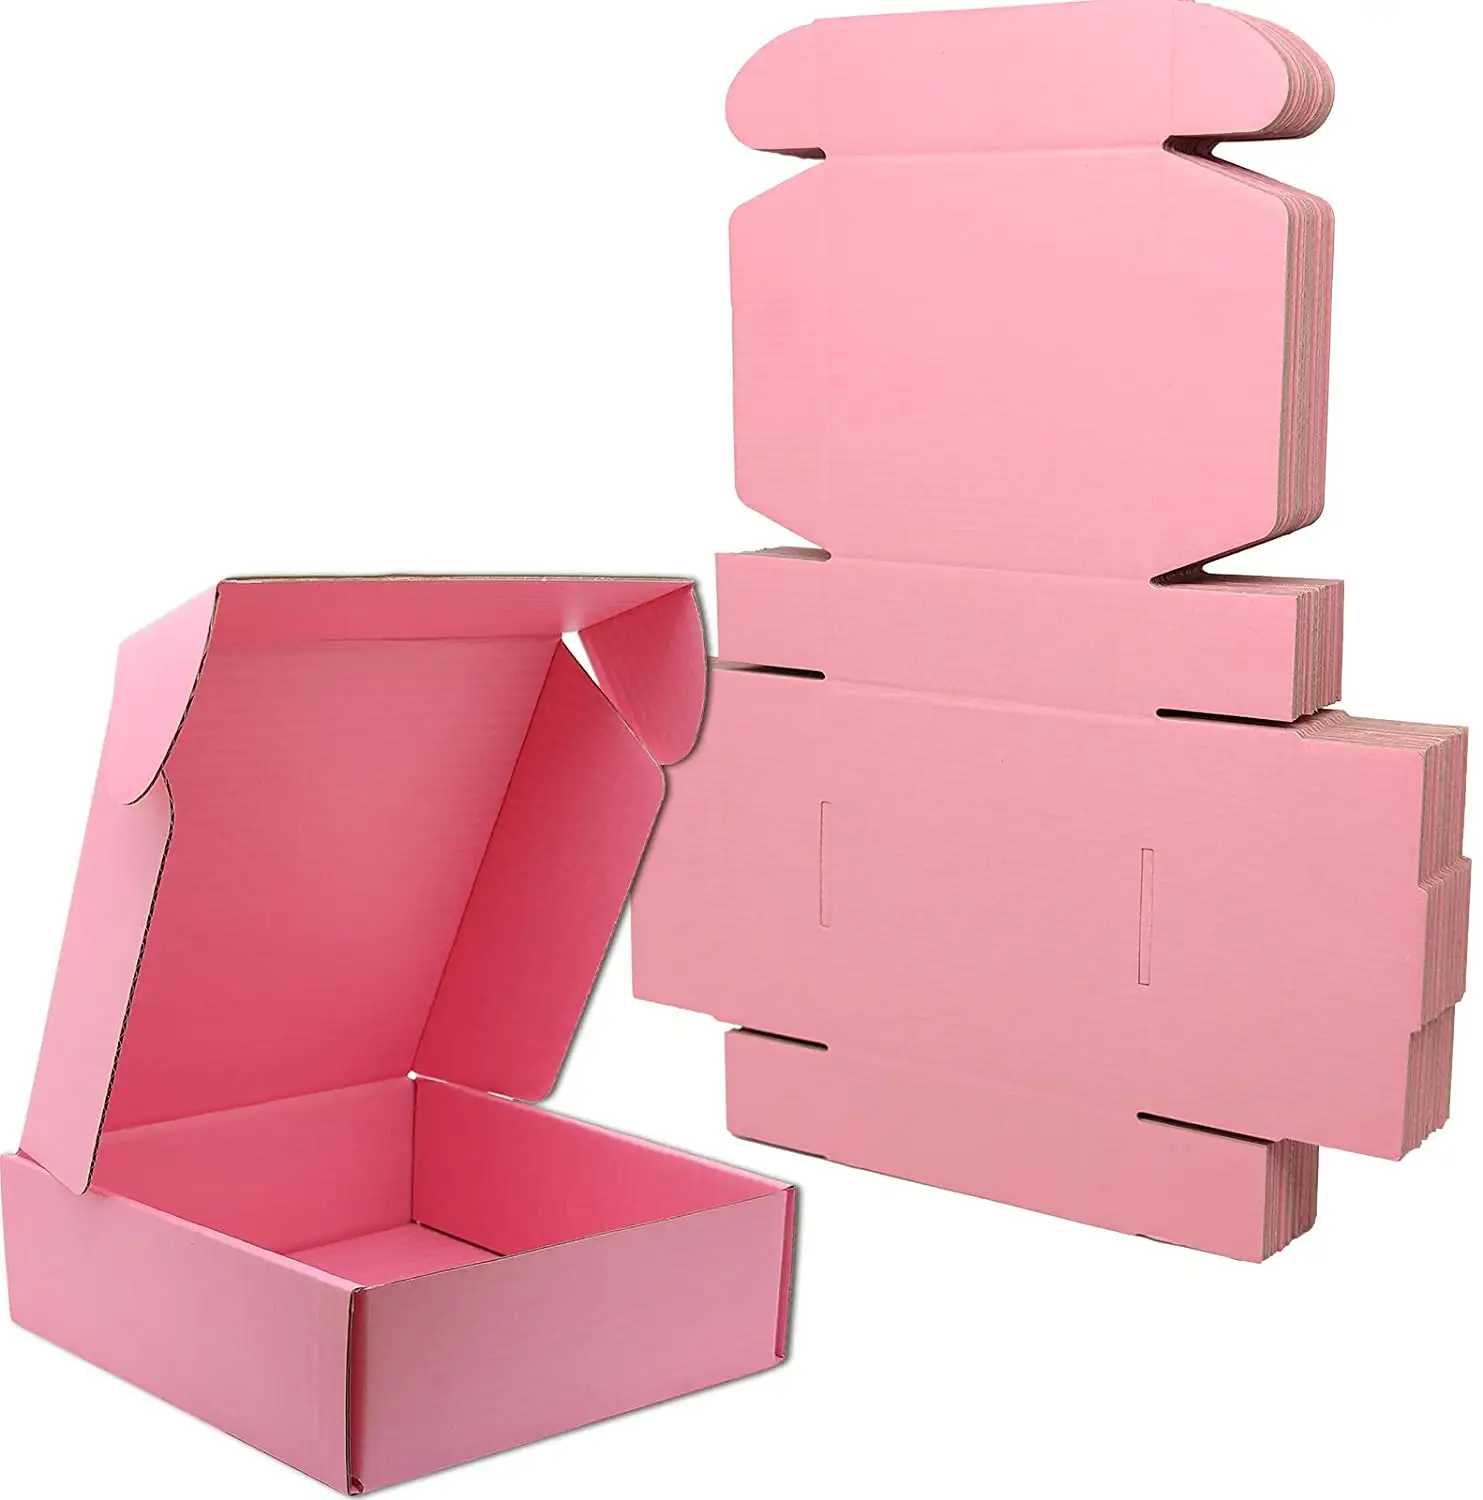 Mailer Box Herstellung kunden spezifische farbige Mailer-Boxen mit benutzer definiertem Logo gedruckt, langlebige Bekleidung Verpackungs boxen für Hut